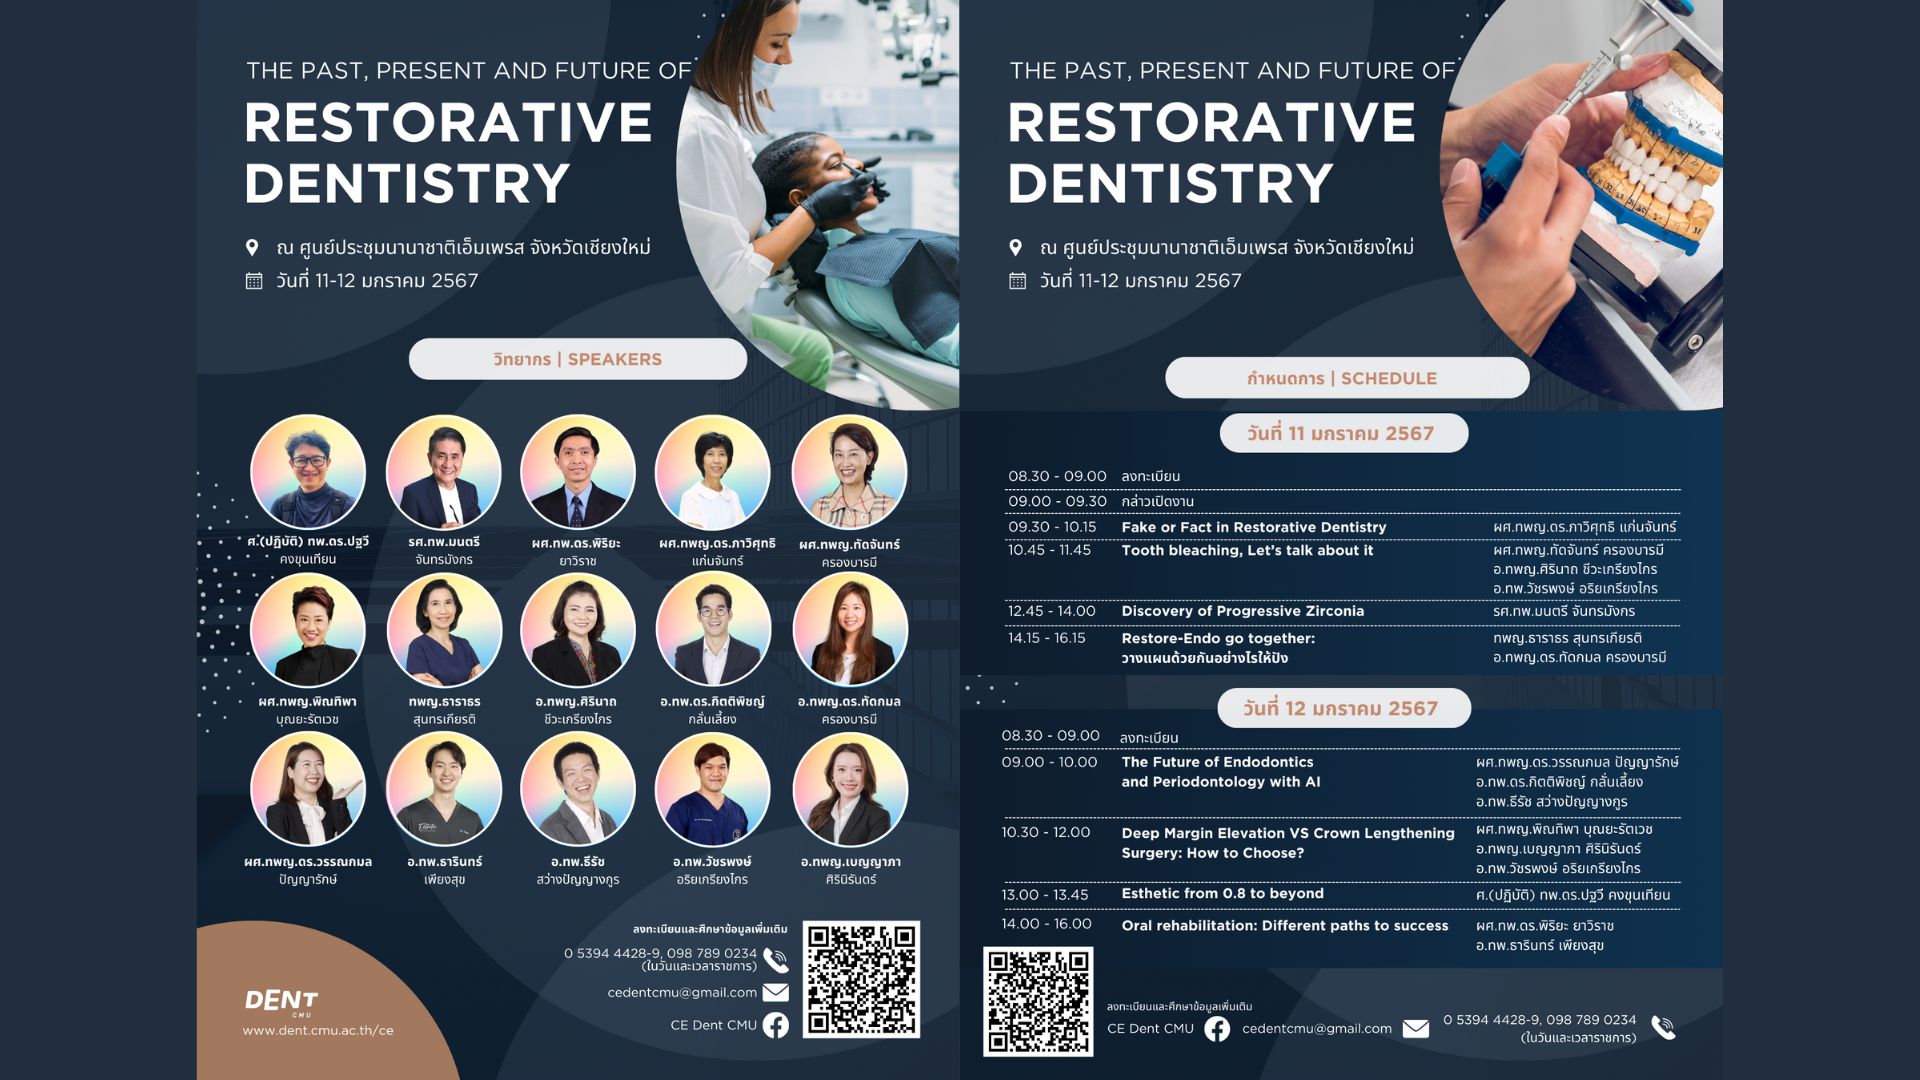 โครงการประชุมวิชาการ เรื่อง “The Past, Present and Future of Restorative Dentistry”